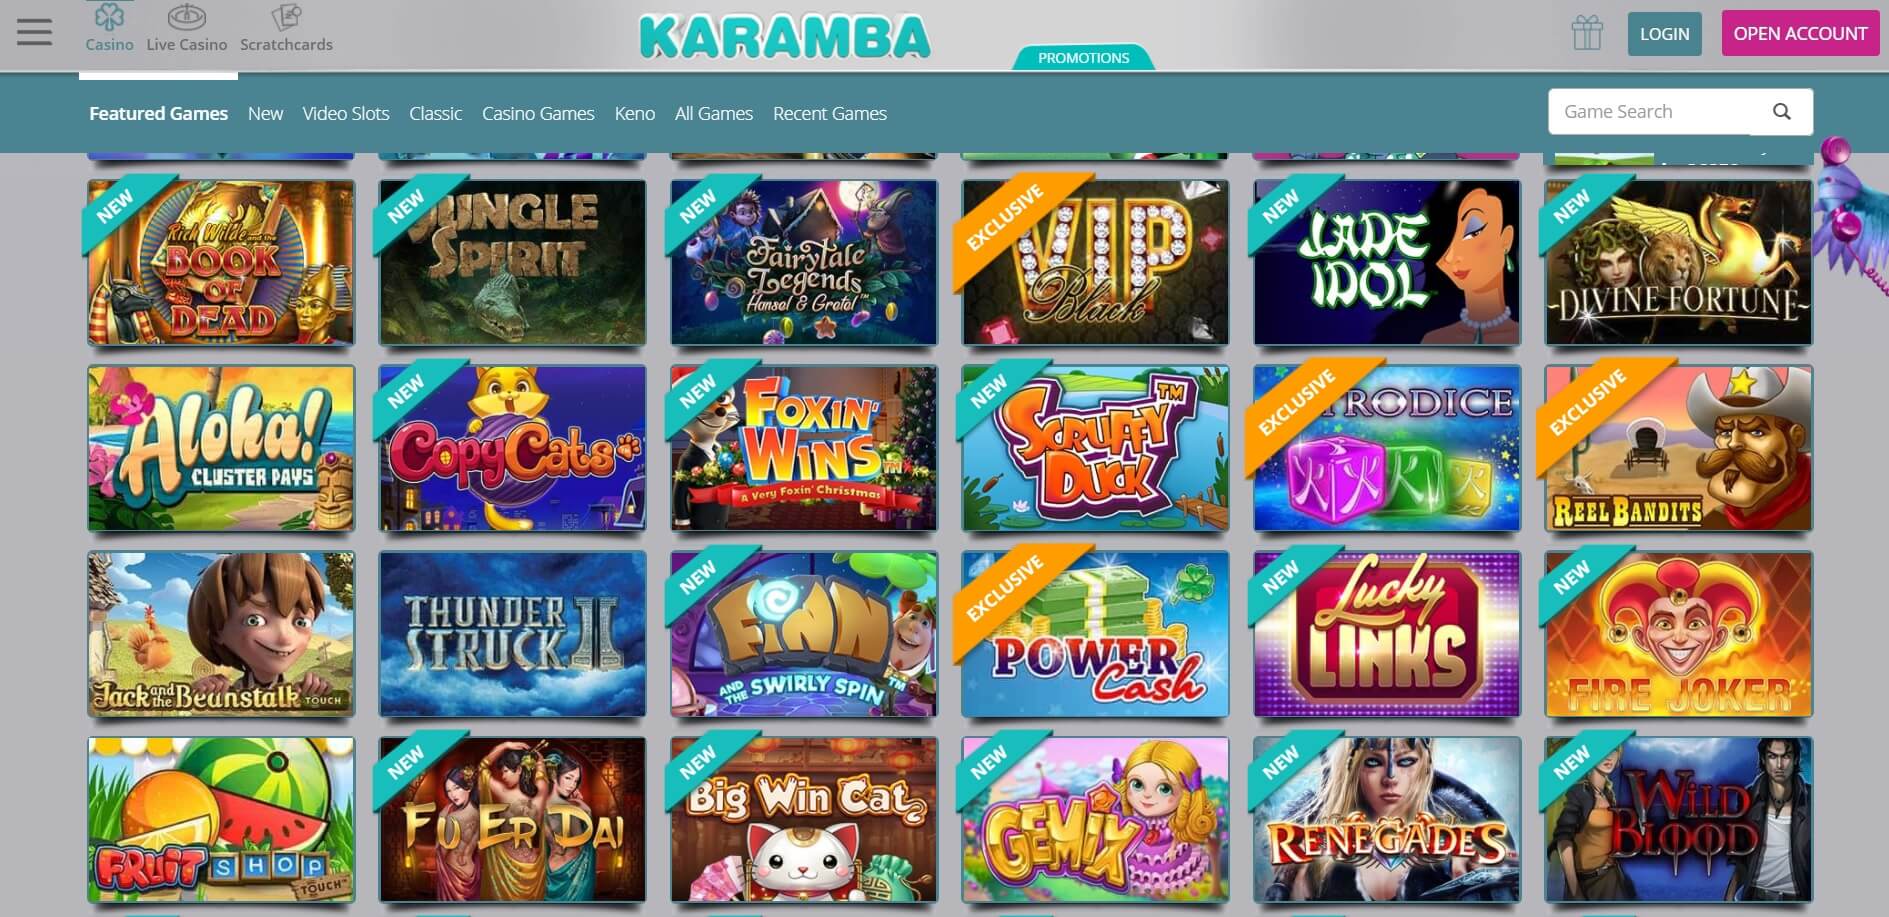 karamba casino games and online slots